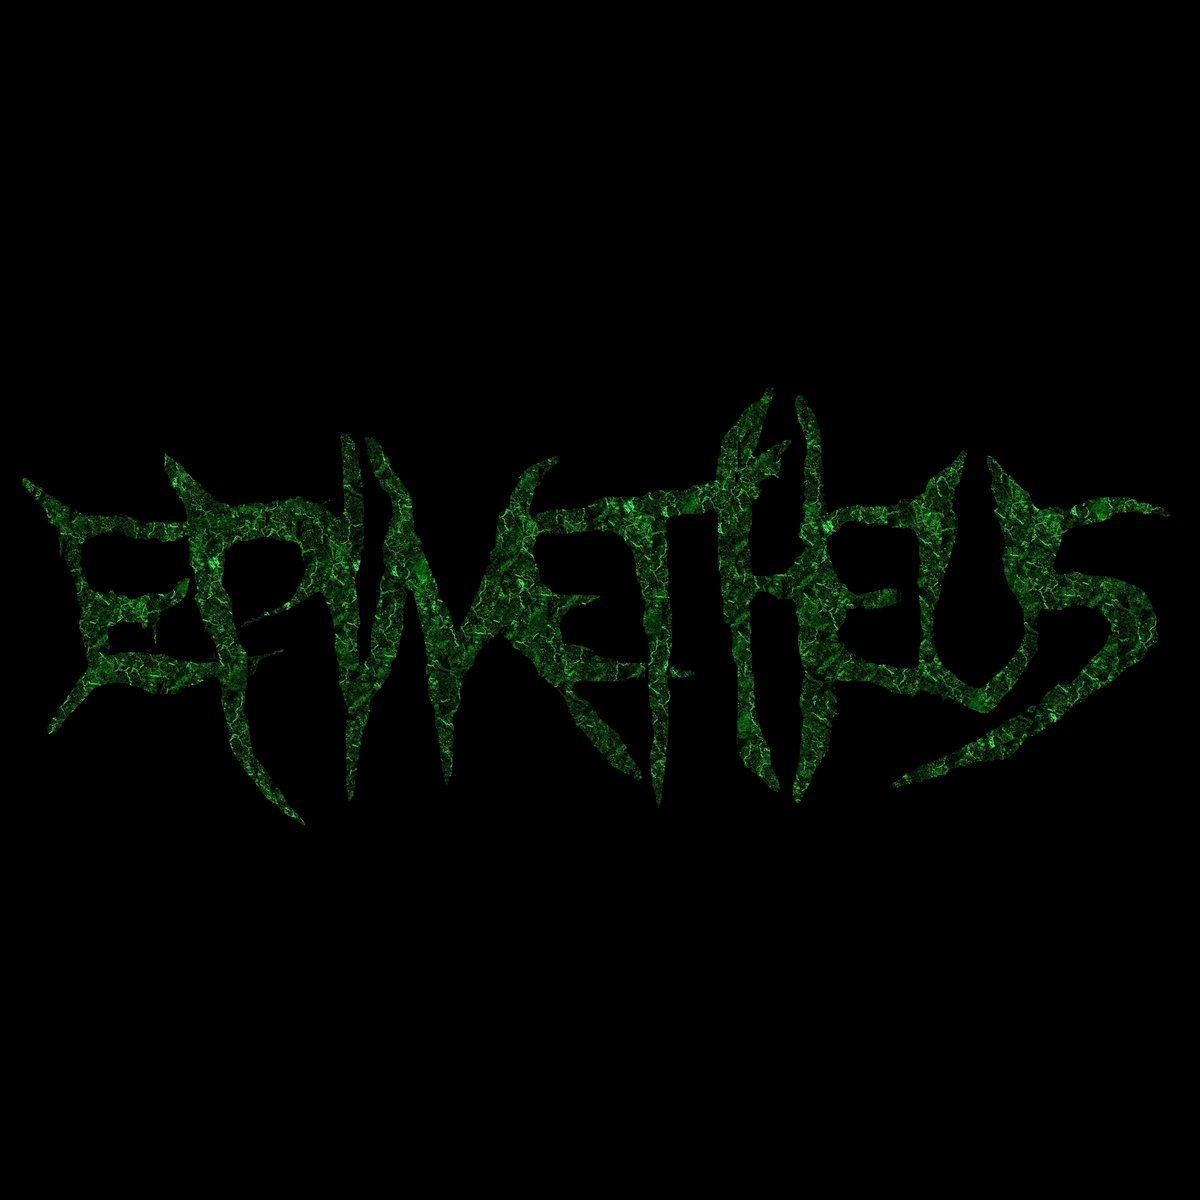 Epimetheus Logo - Epimetheus